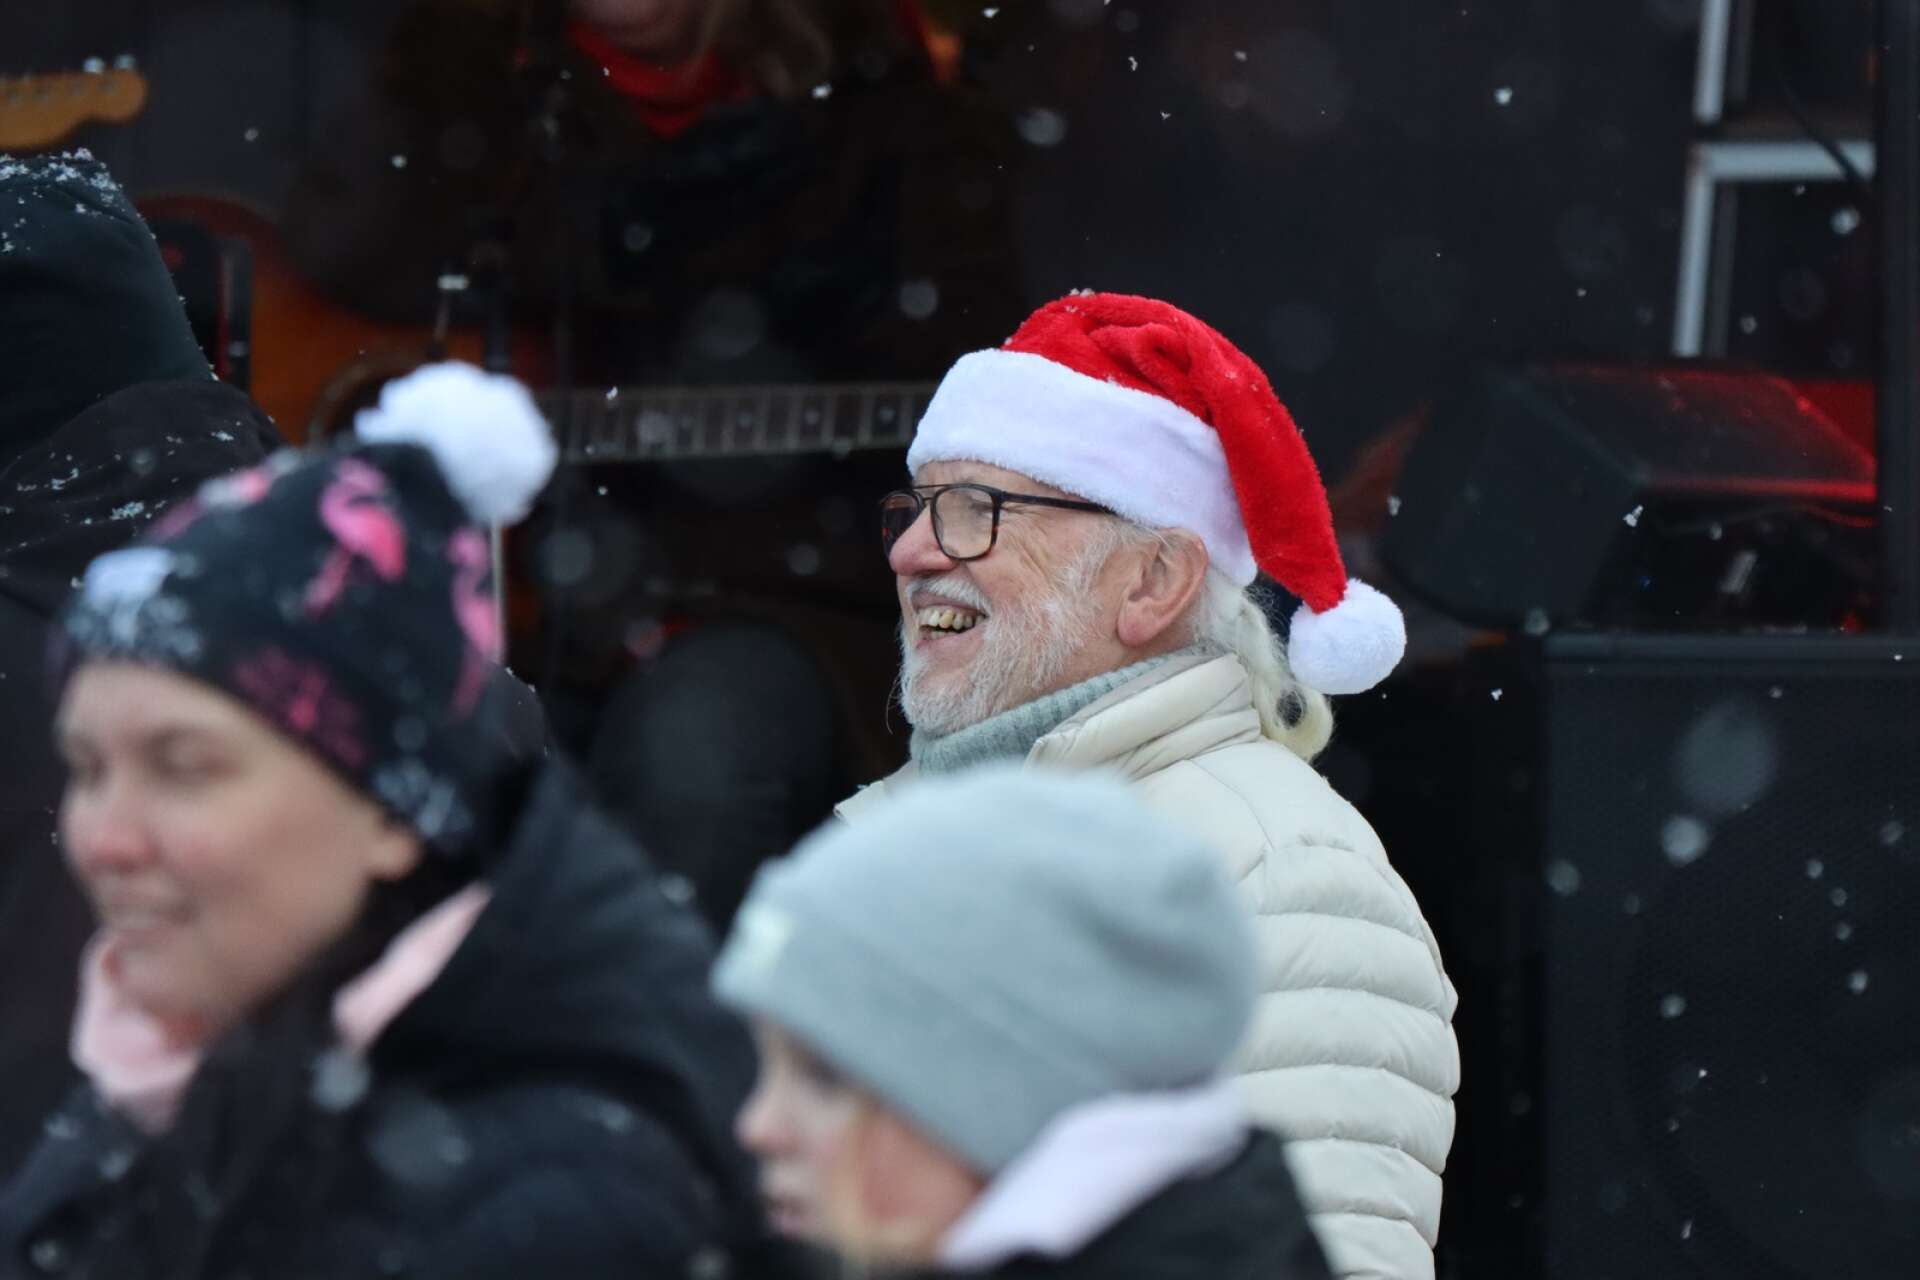 Filipstads julmarknad blev en fest för hela familjen. Det såldes juldekorationer, lotter och hembakat, bland annat. Marknaden arrangerades av Filipstadsföretag i samverkan. Thomas Andersson bjöd på ett och annat leende.